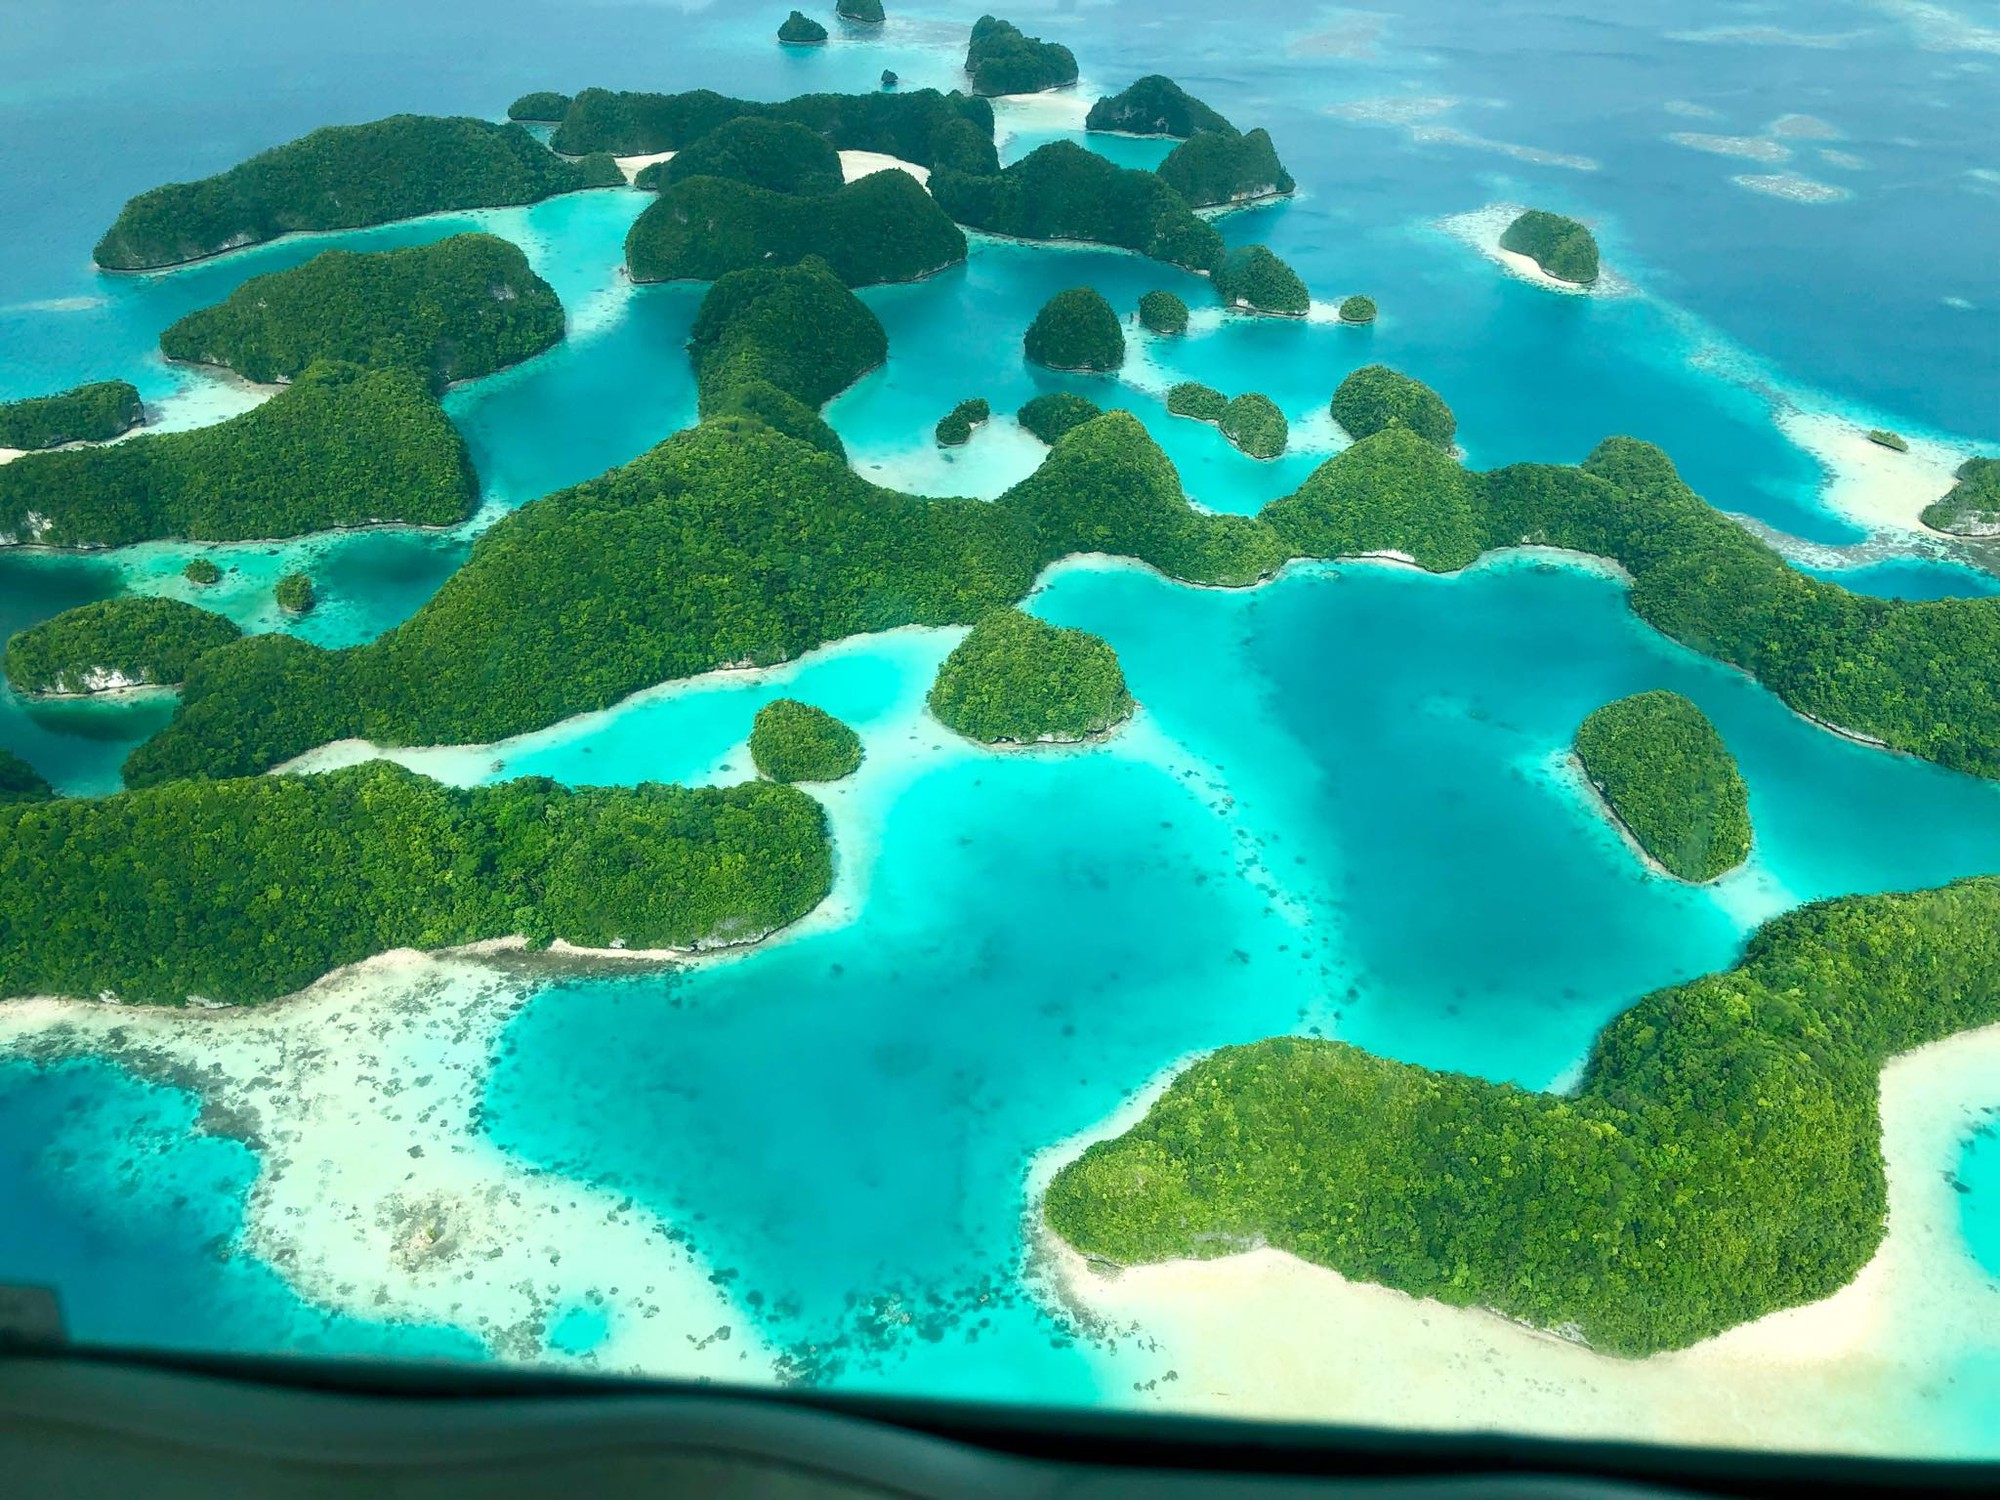 Du lịch thiên đường lặn biển Palau cùng gia đình con nhỏ 14 tháng, chồng lái trực thăng đưa vợ đi chơi - Ảnh 12.